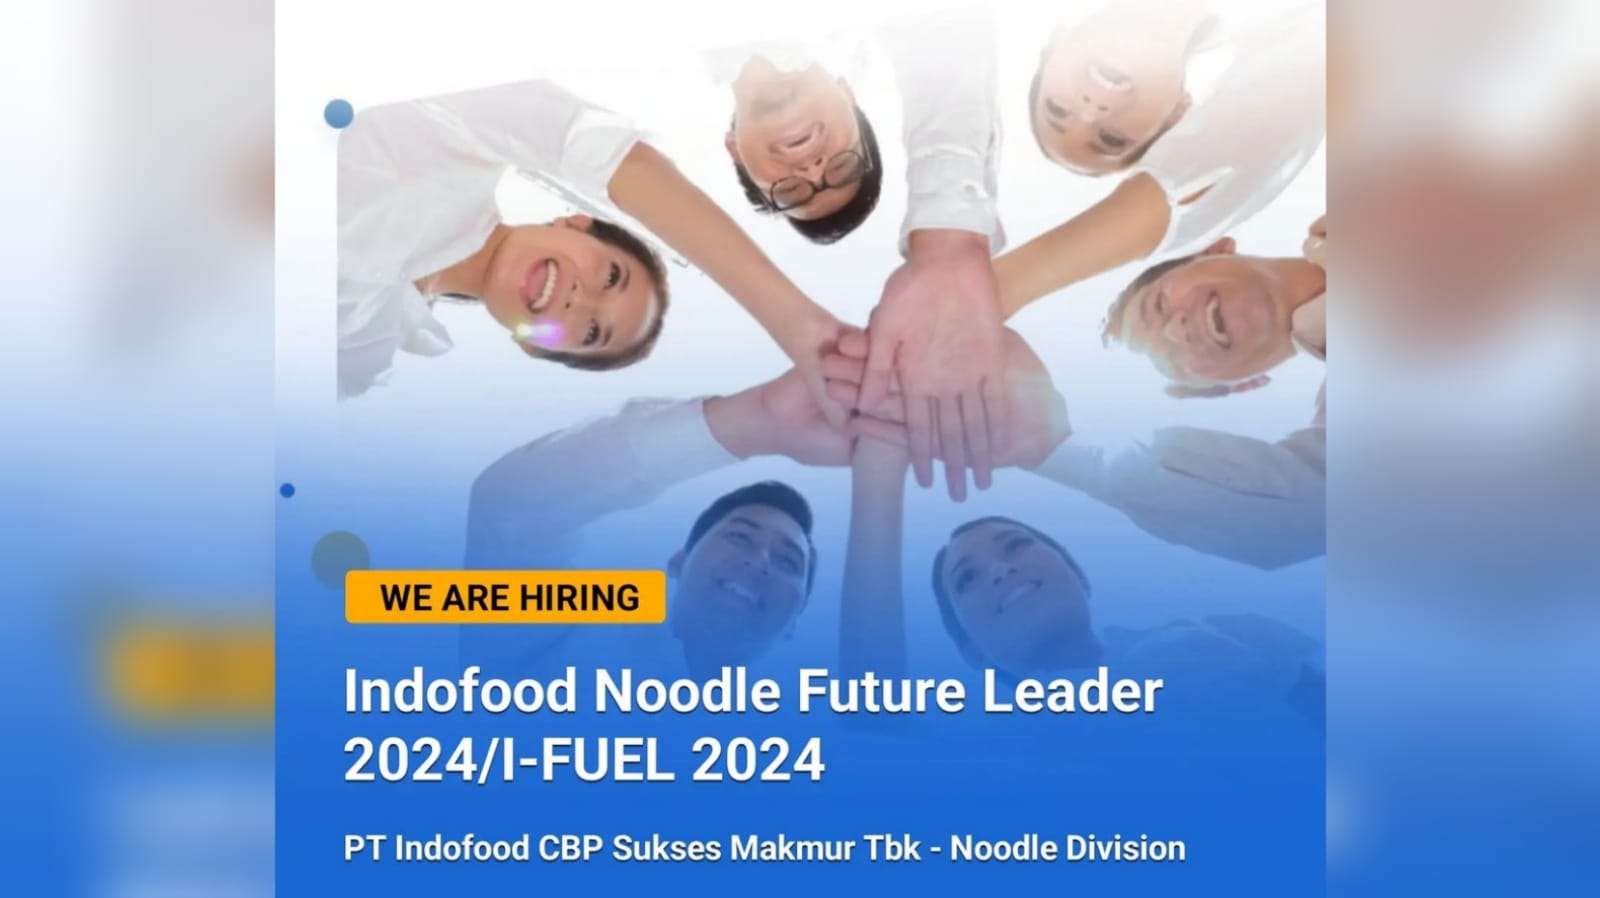 Lowongan Kerja PT Indofood Buka Peluang Kerja Melalui Program Management Trainee Ini Syarat dan Kualifikasinya